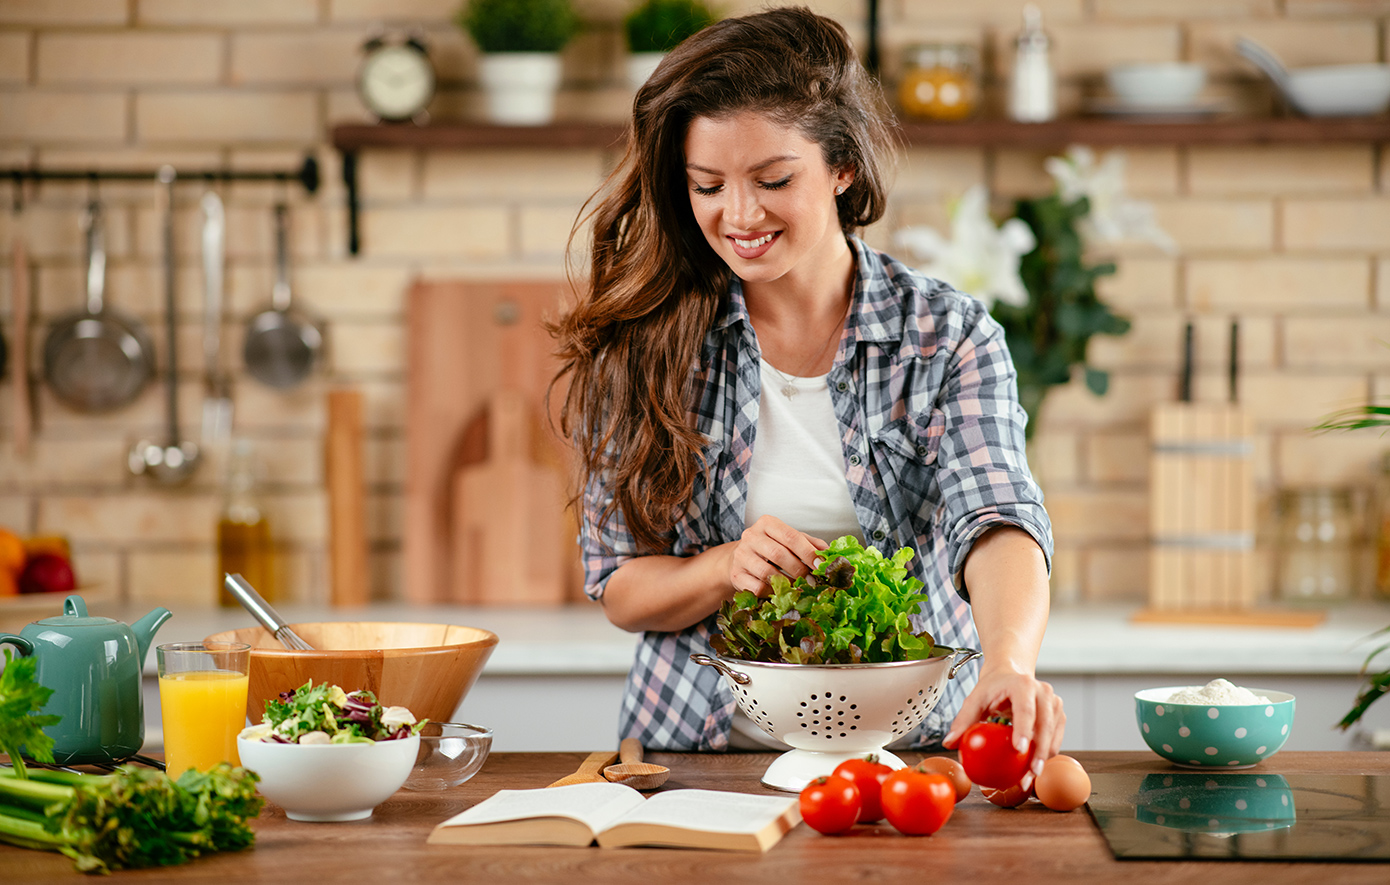 Μαγειρική: Η πρακτική αυτοφροντίδας που δεν είχες σκεφτεί